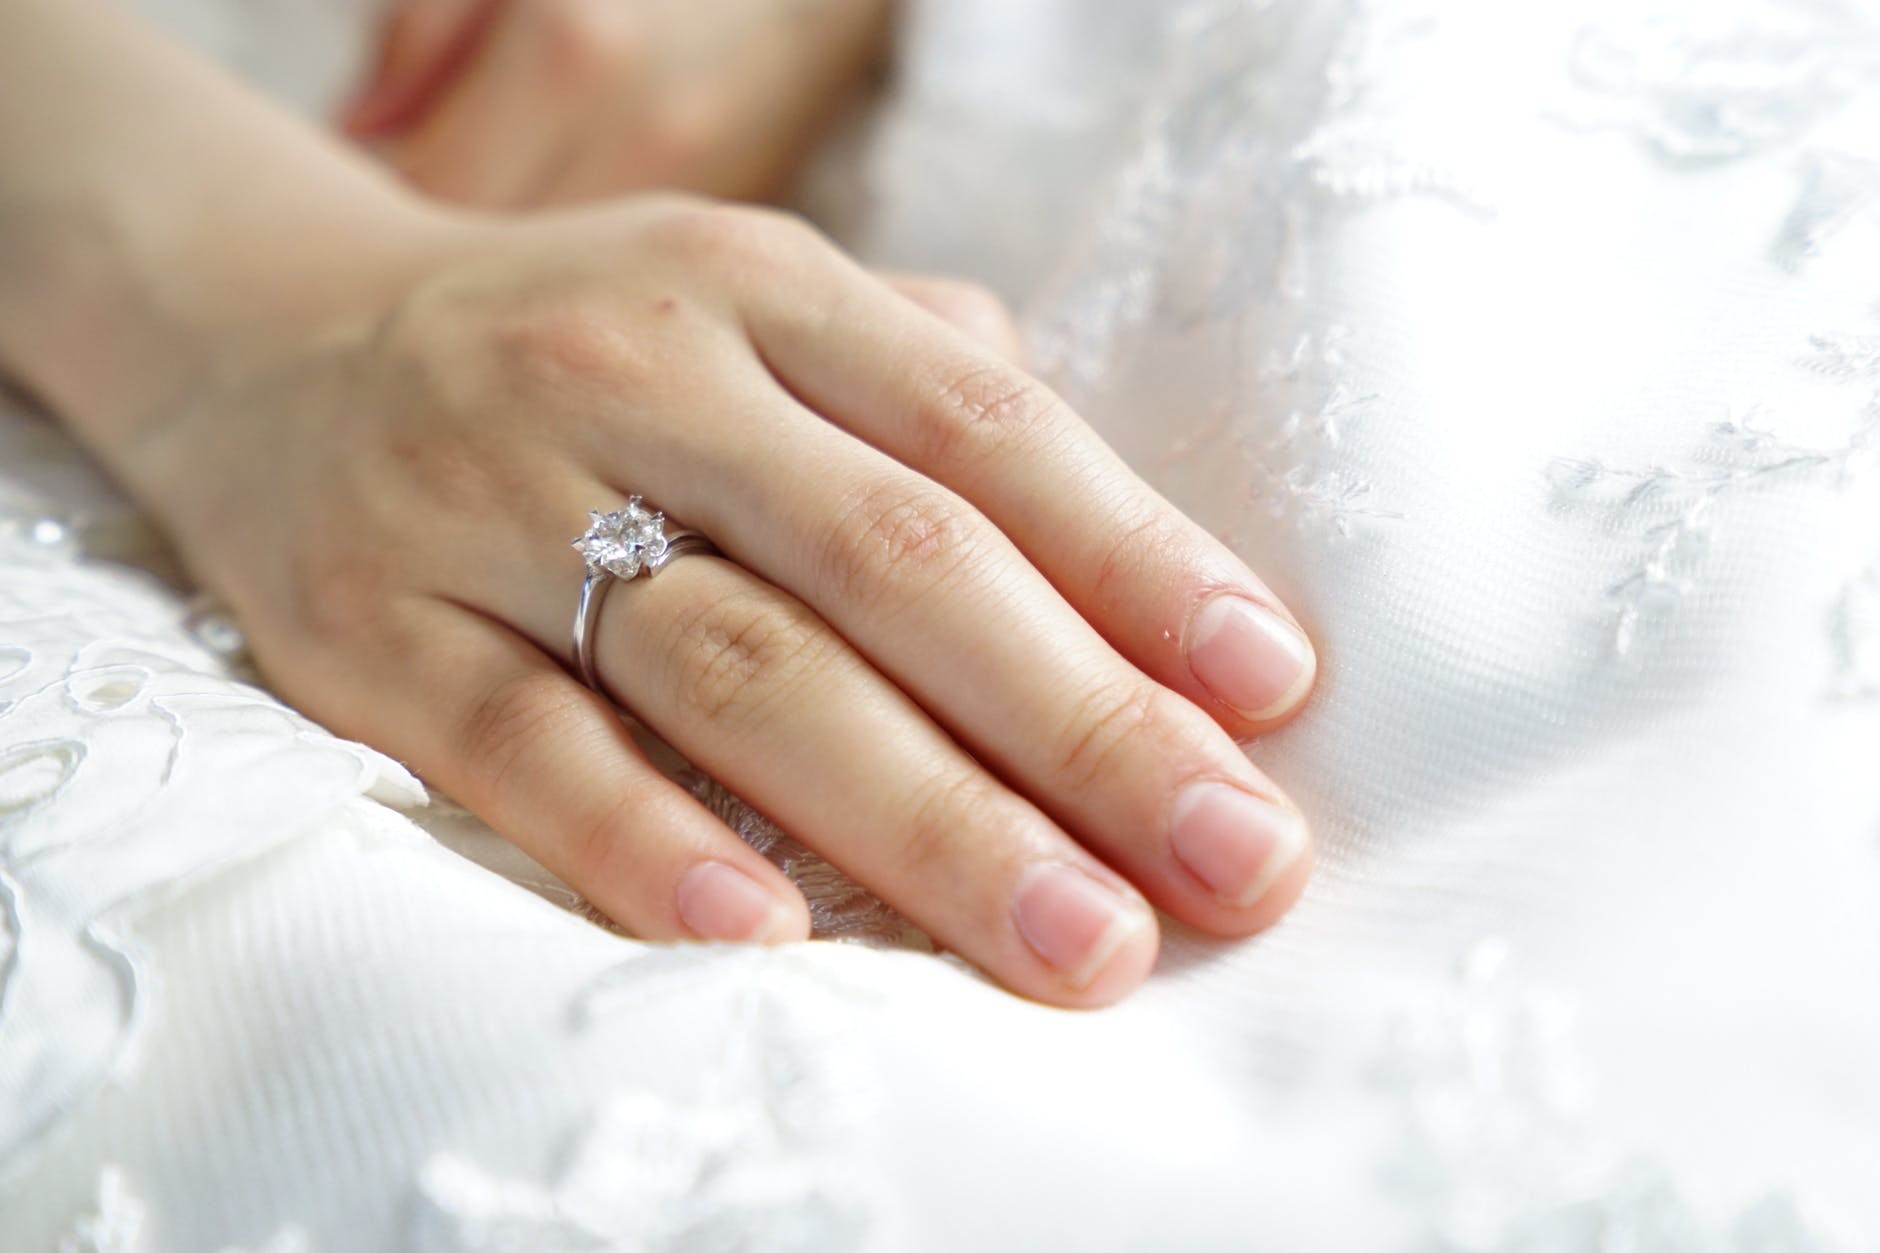 Mulher ficou com o dedo inchado após usar anel de casamento  (Foto: Pexels)